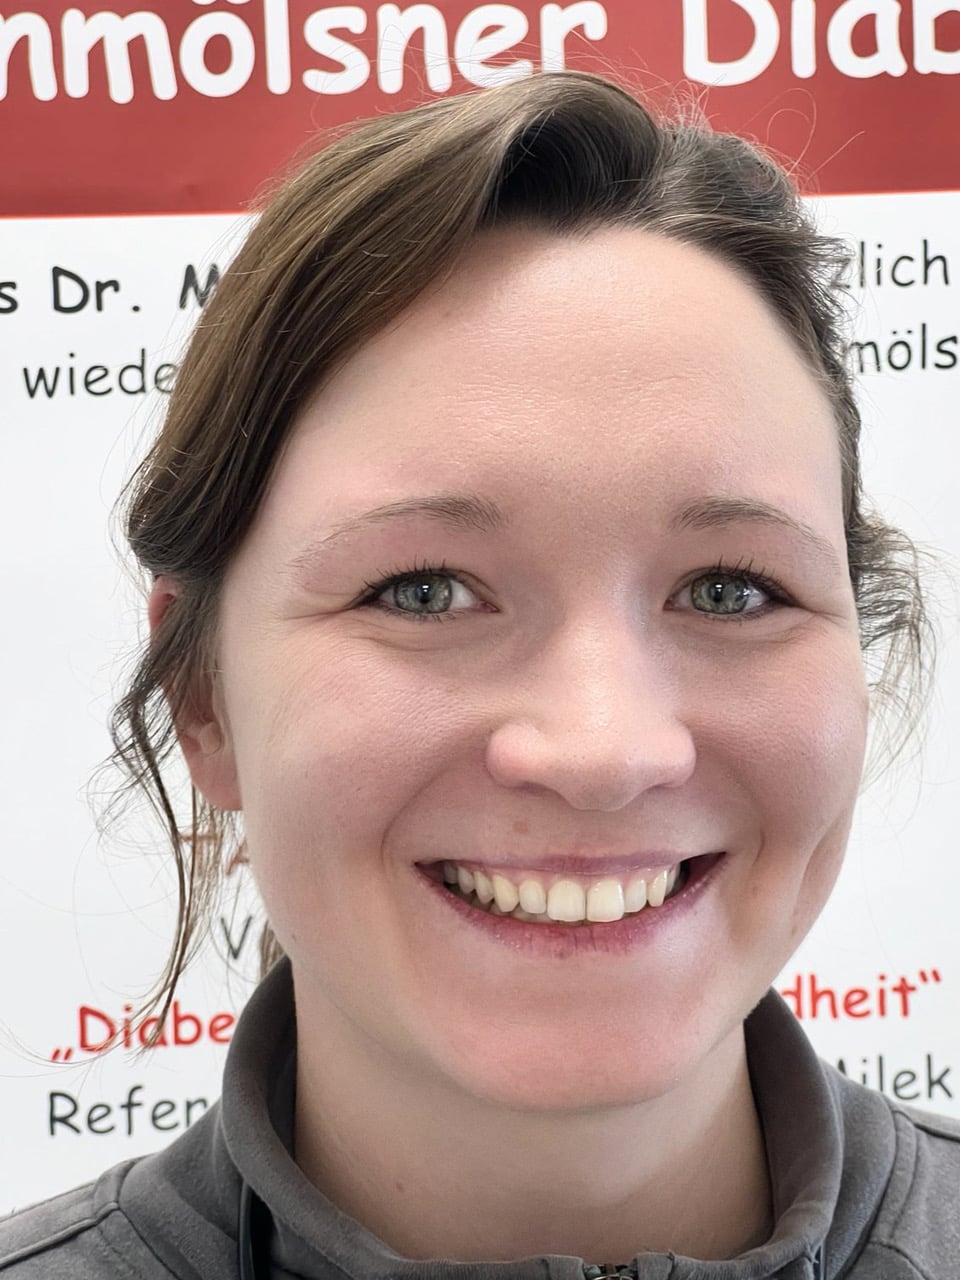 Christiane Ölschläger - Ärztin in Weiterbildung bei Arztpraxis Dr. Milek